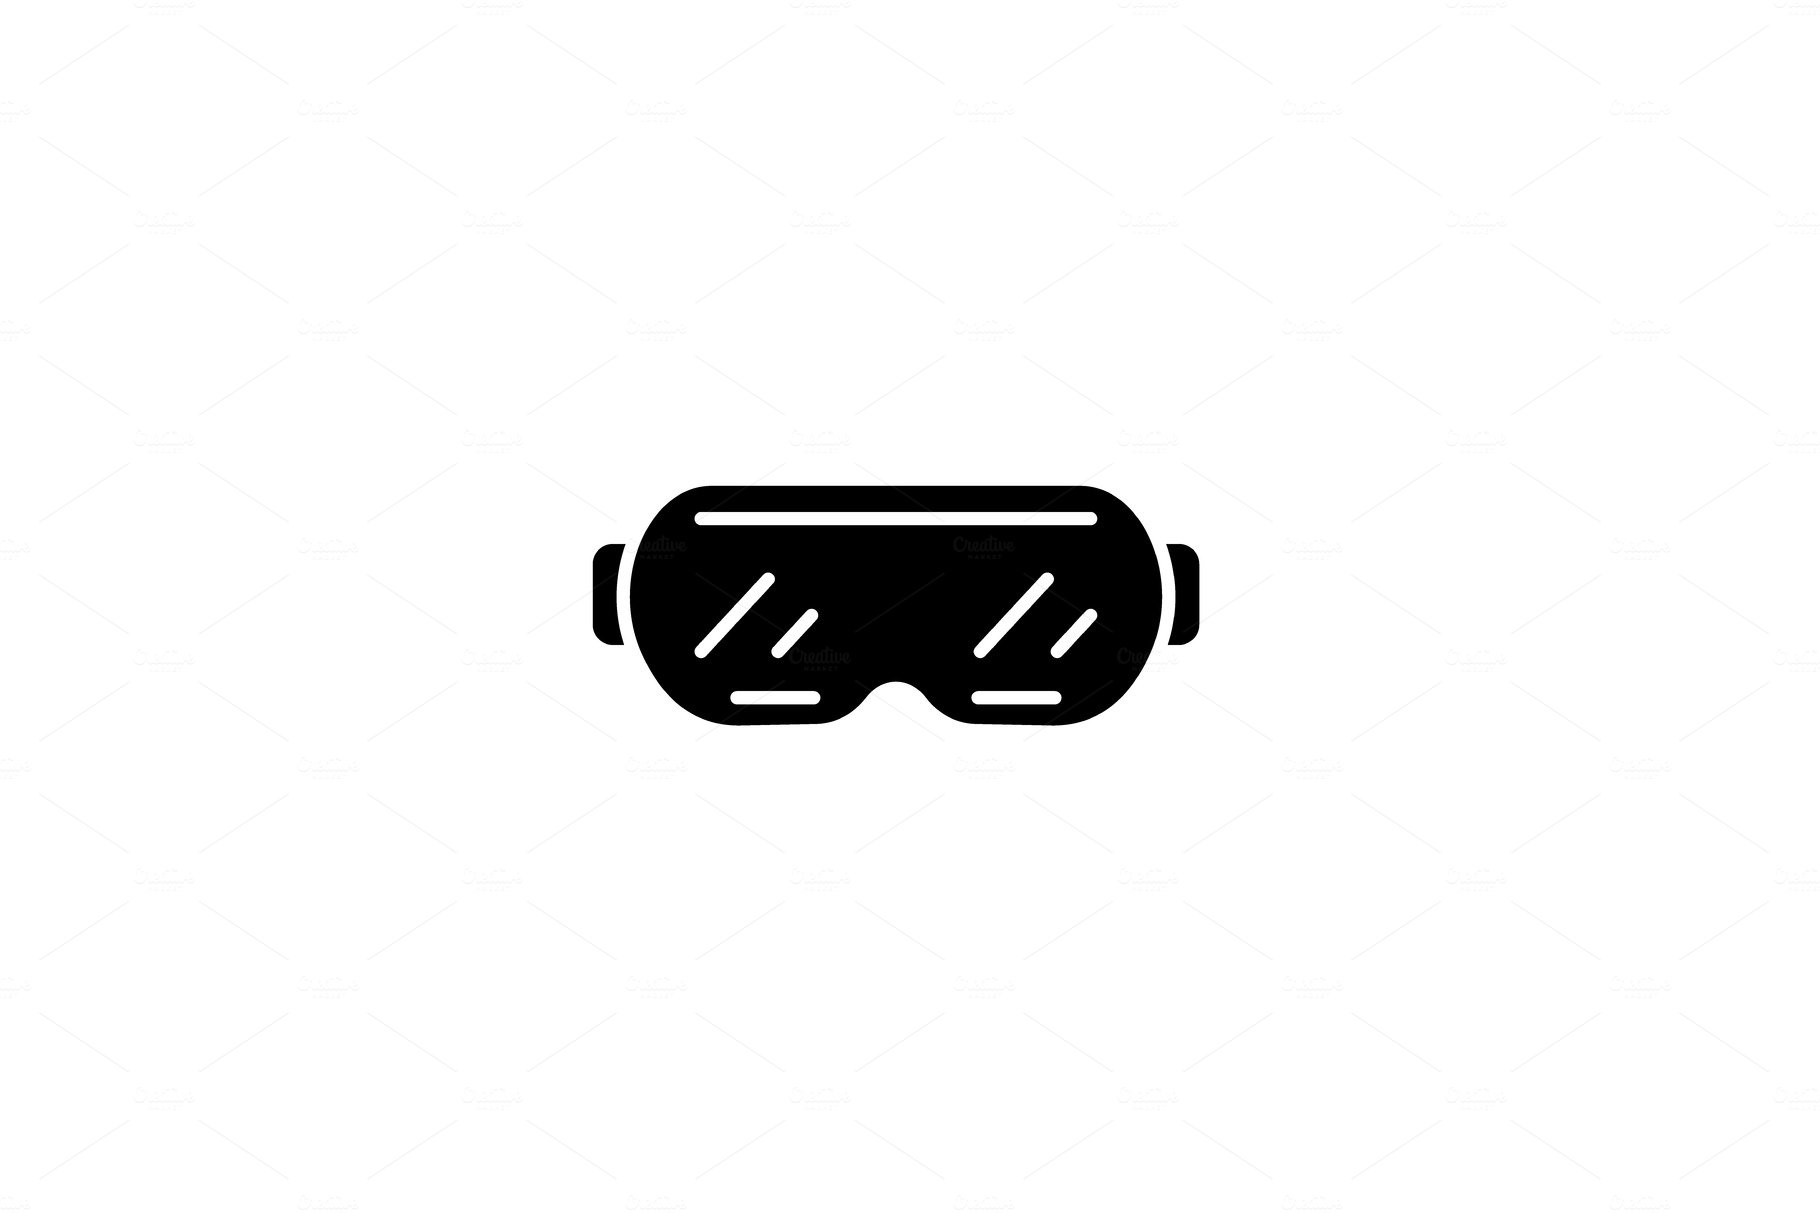 Ski goggles black icon, vector sign cover image.